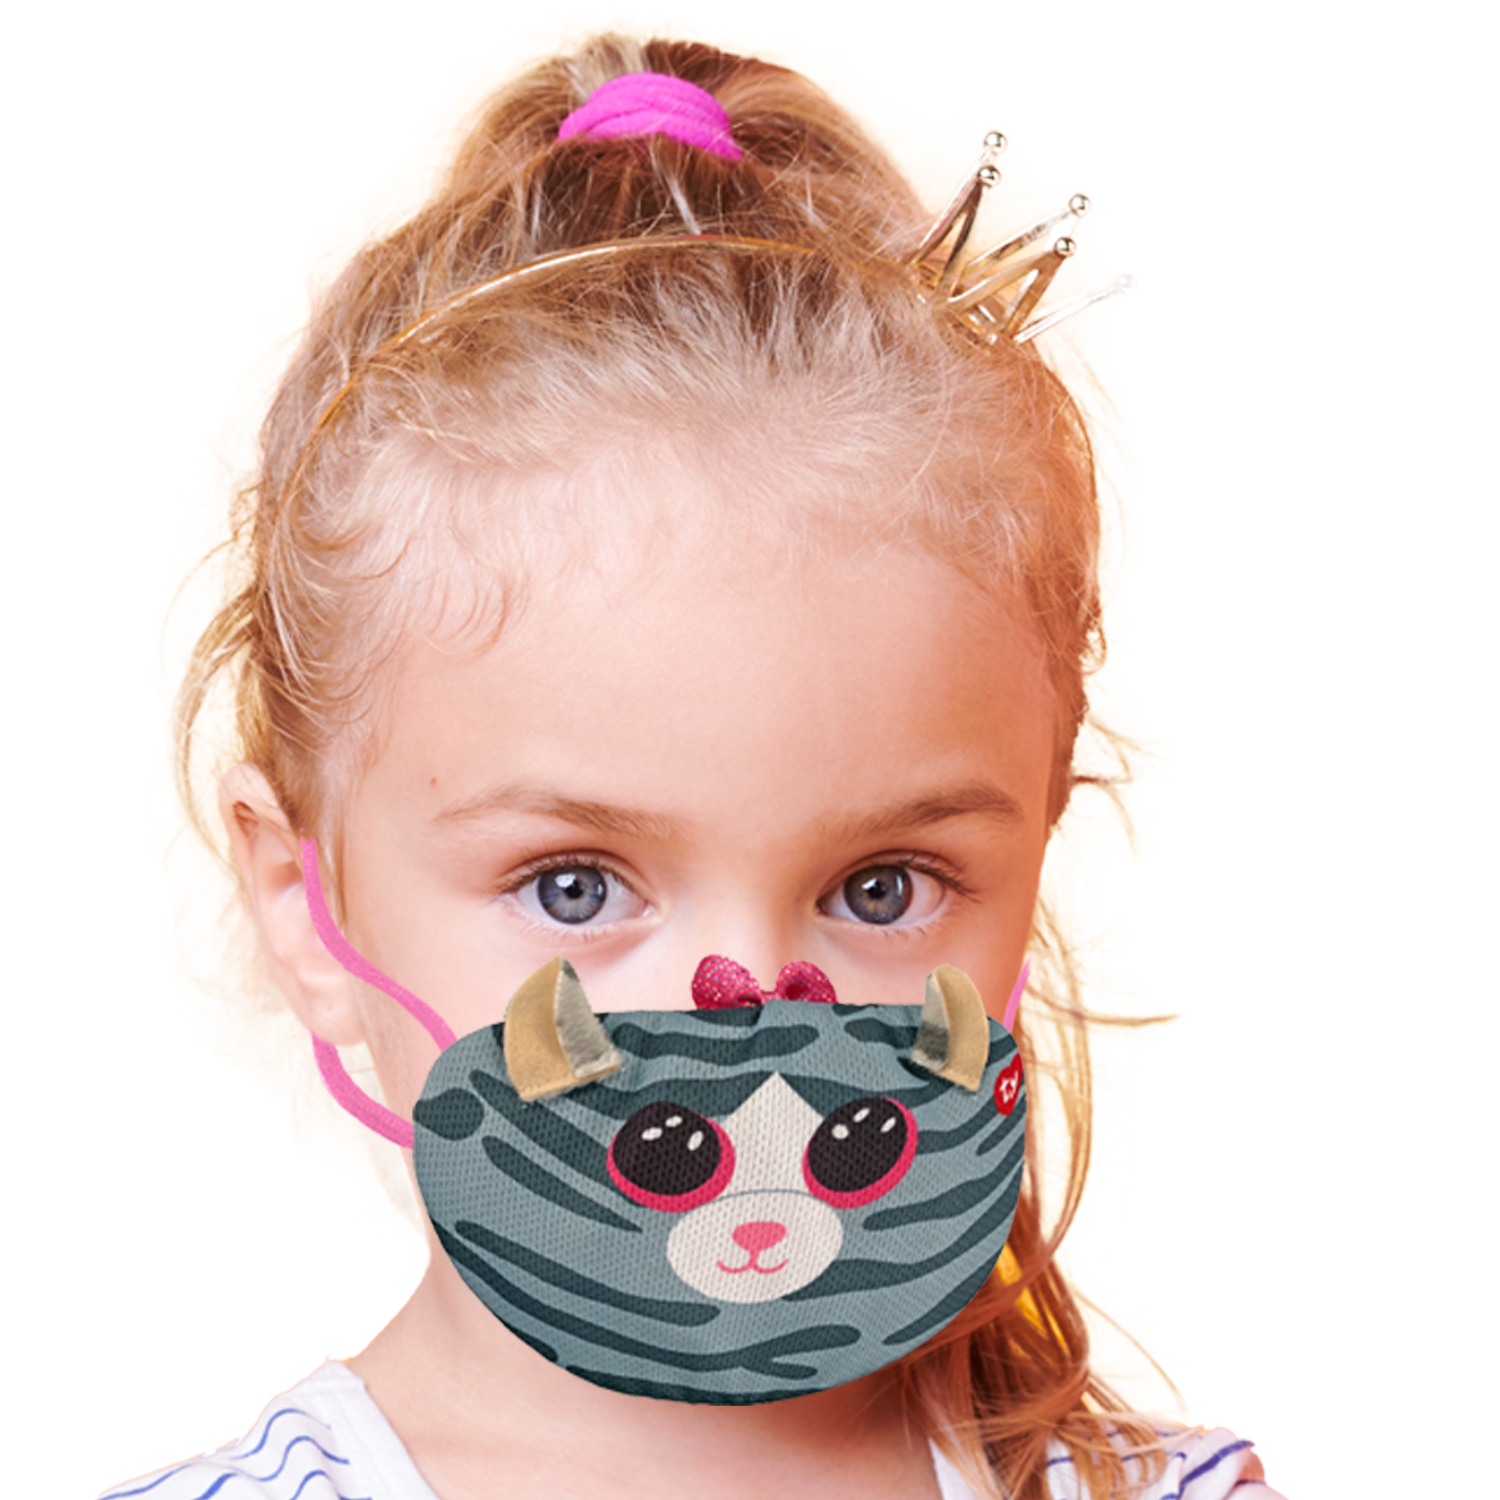 TY mask - maska na obličej / rouška : kočička Kiki 95700